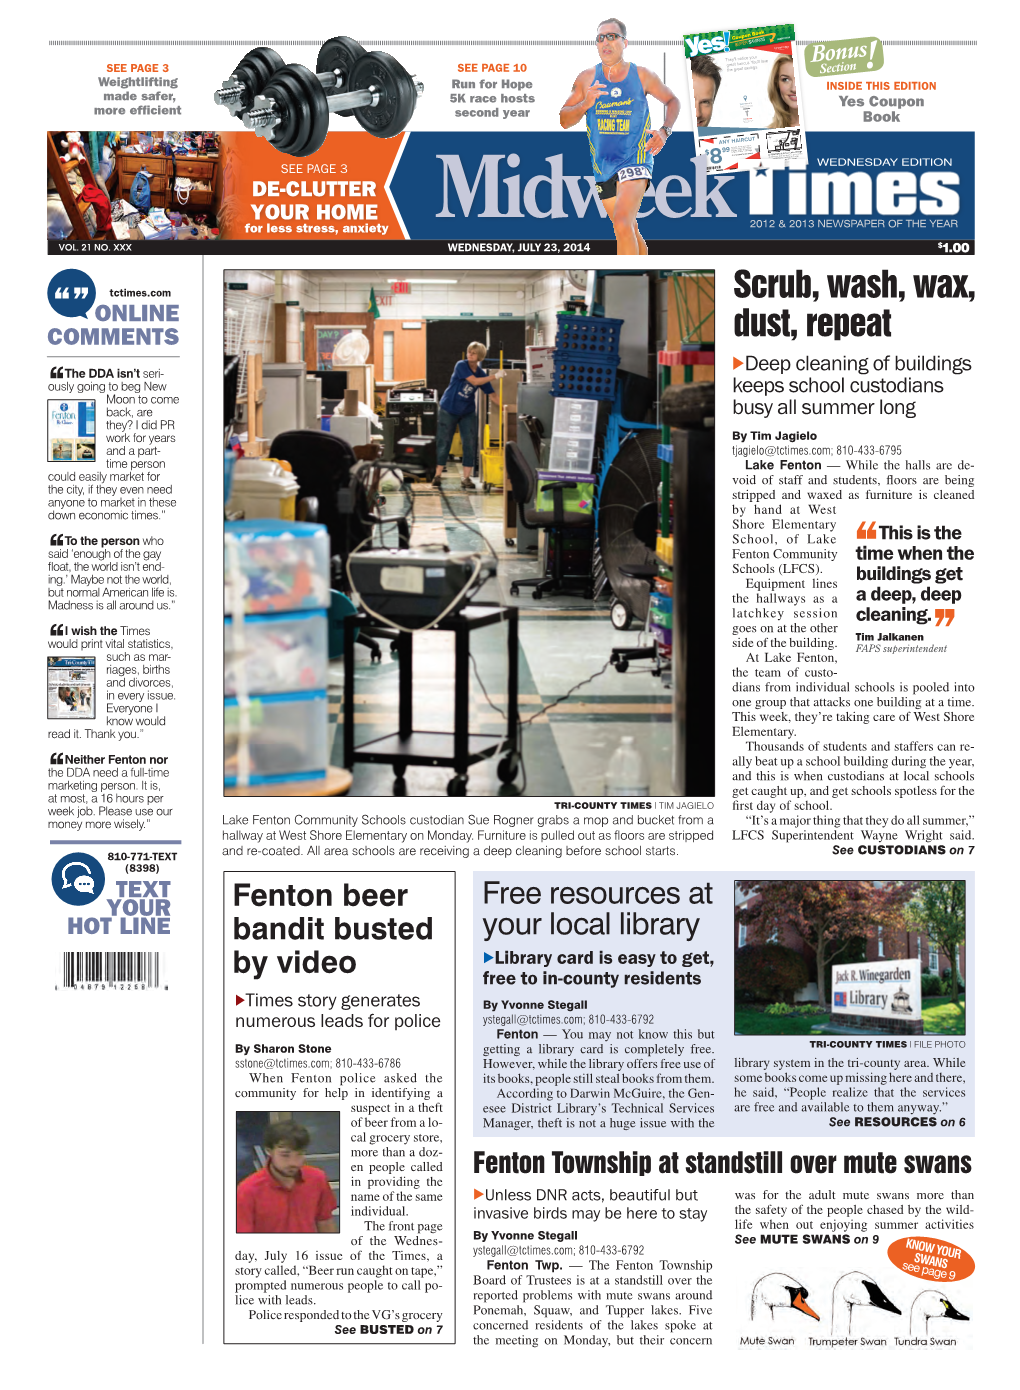 Midweek 2012 & 2013 NEWSPAPER of the YEAR VOL